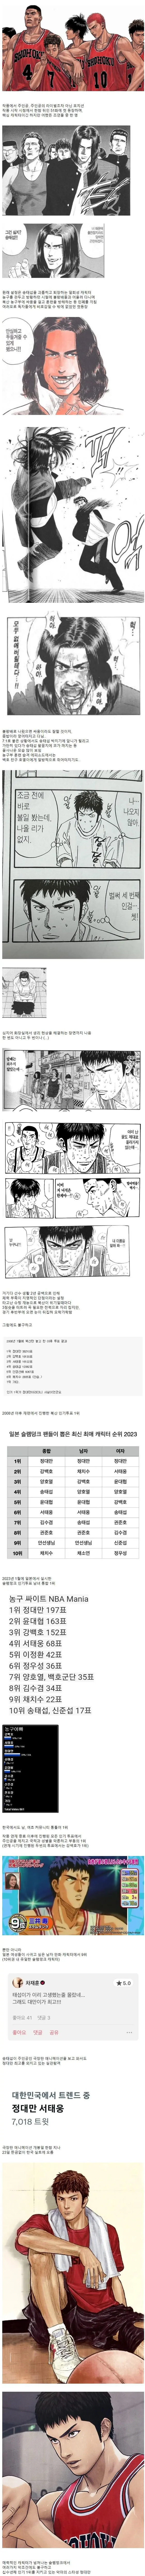 슬램덩크 정대만이 악마의 스타성인 이유 | mbong.kr 엠봉